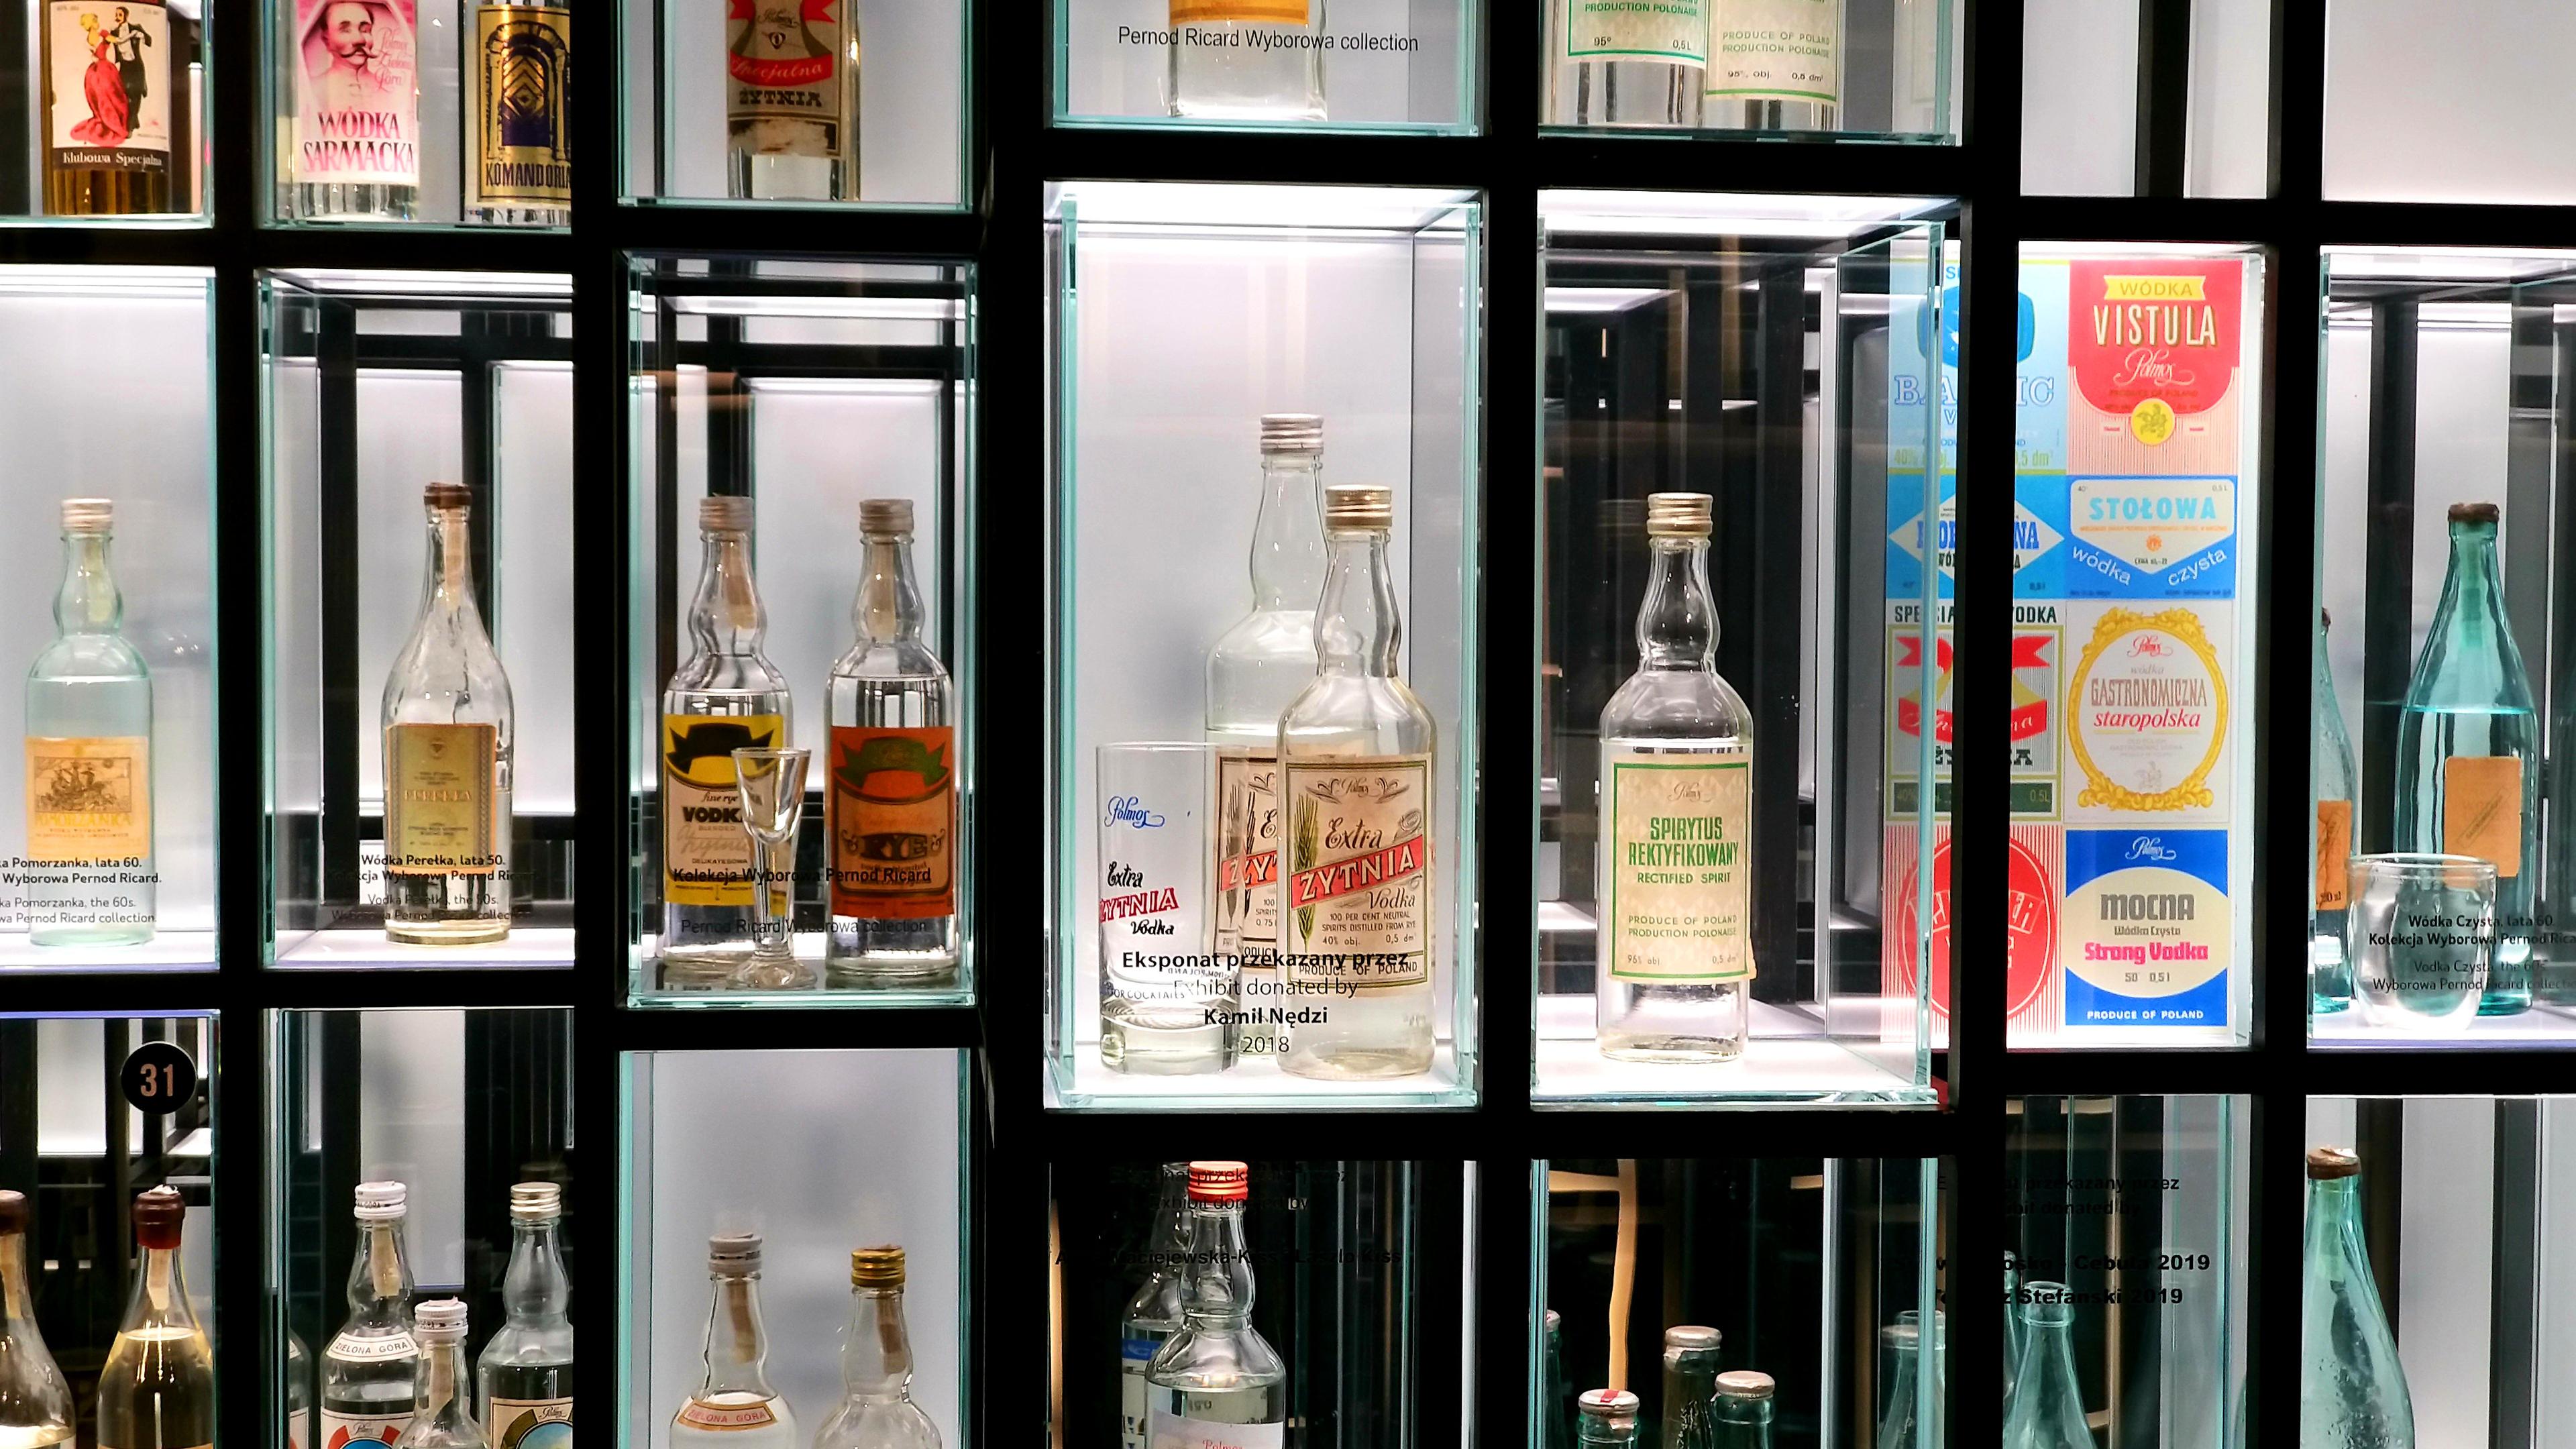 Die Flaschensammlung gehört zu den Highlights im polnischen Wodka-Museum in Warschau.